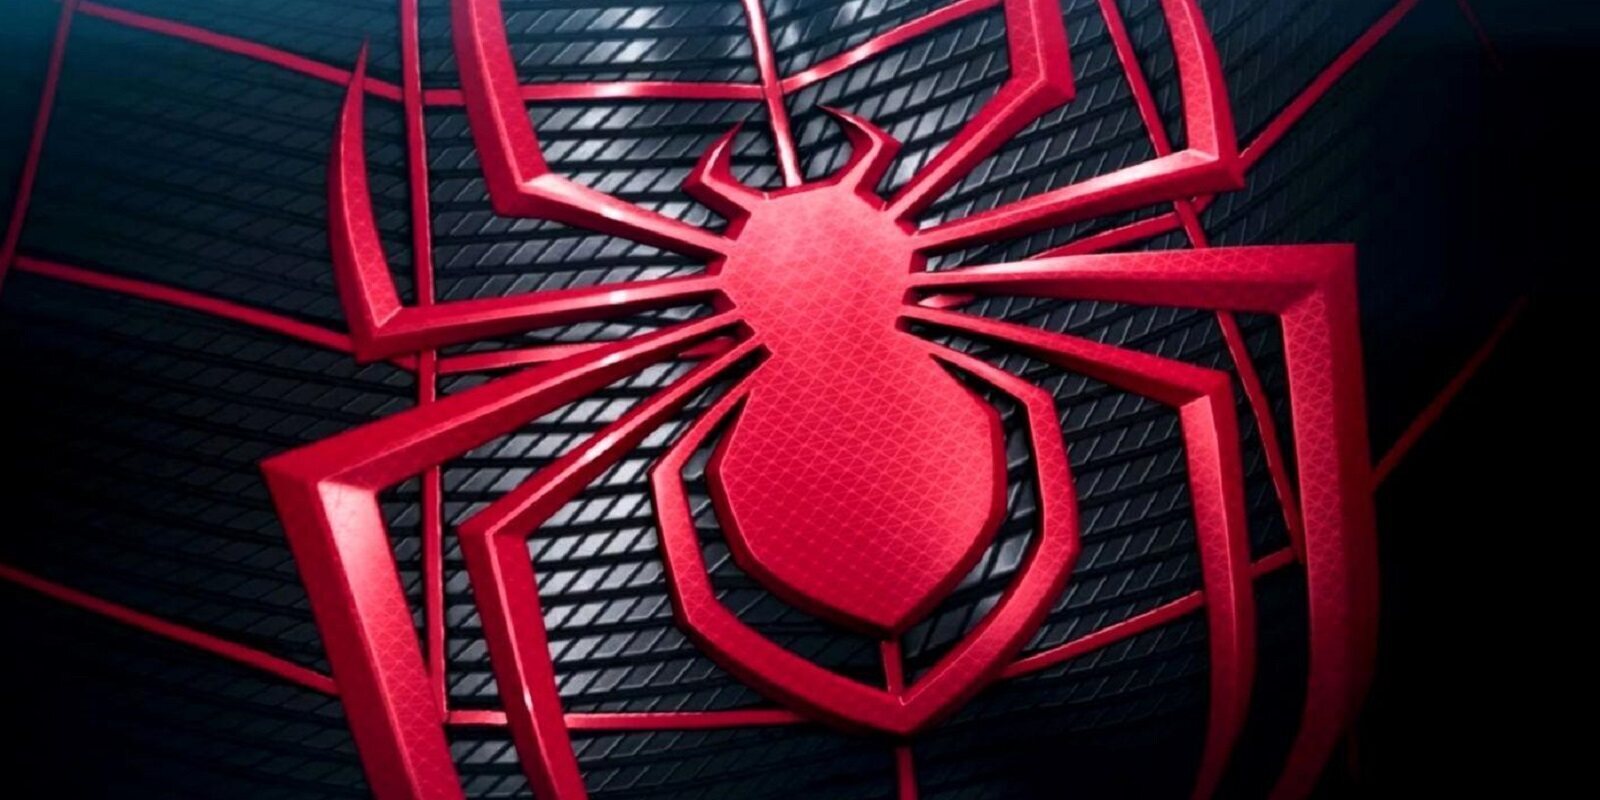 Crean una espectacular demo jugable de 'Spider-Man' con Unreal Engine 5: ¿la has visto ya?